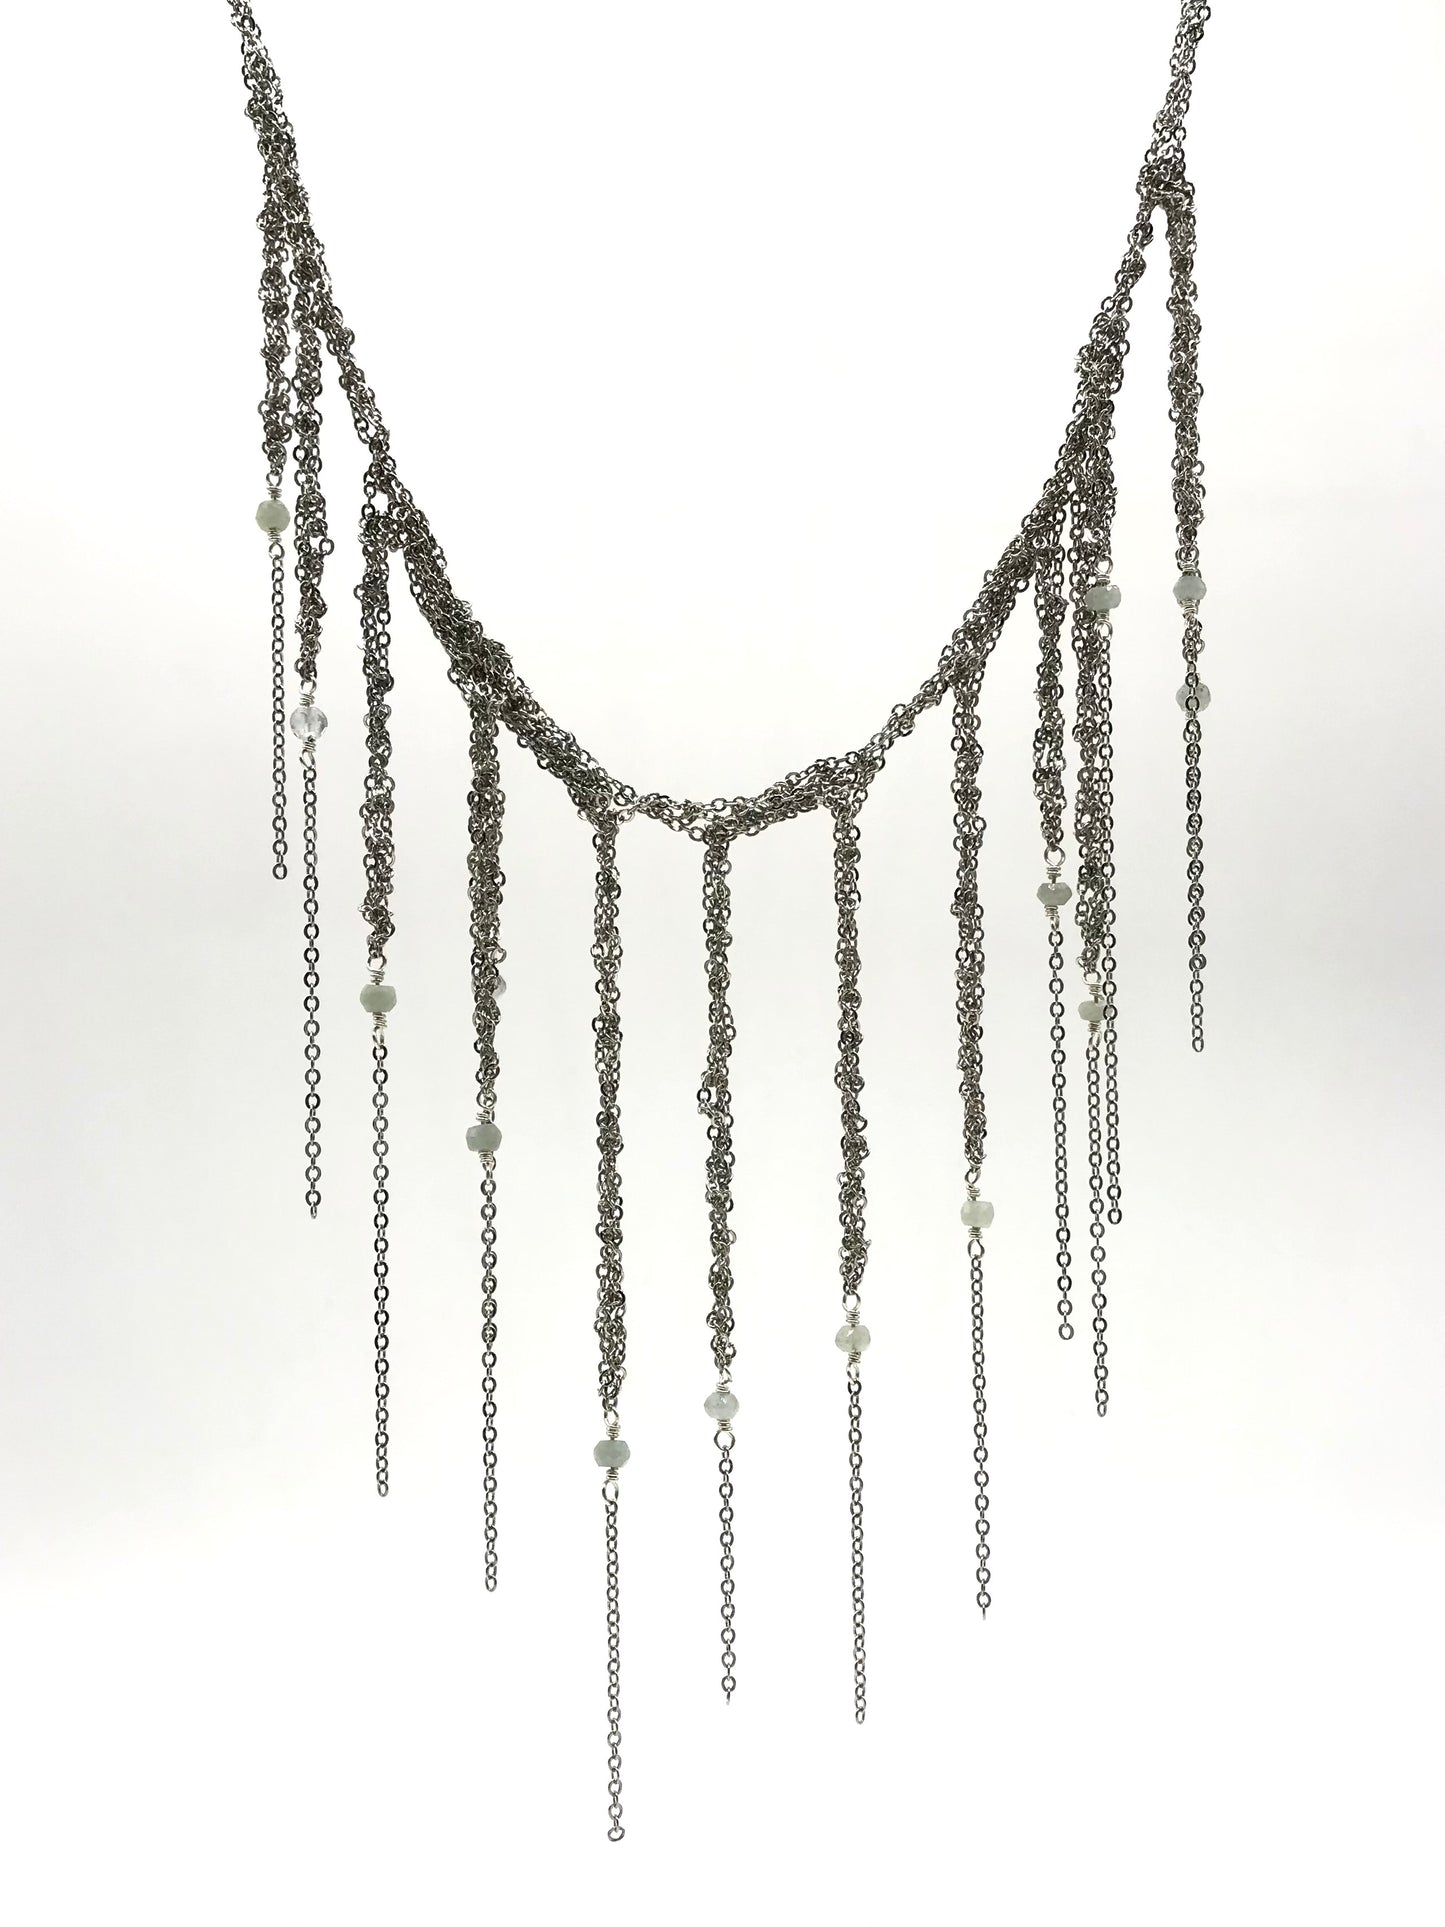 Steel fringe necklace